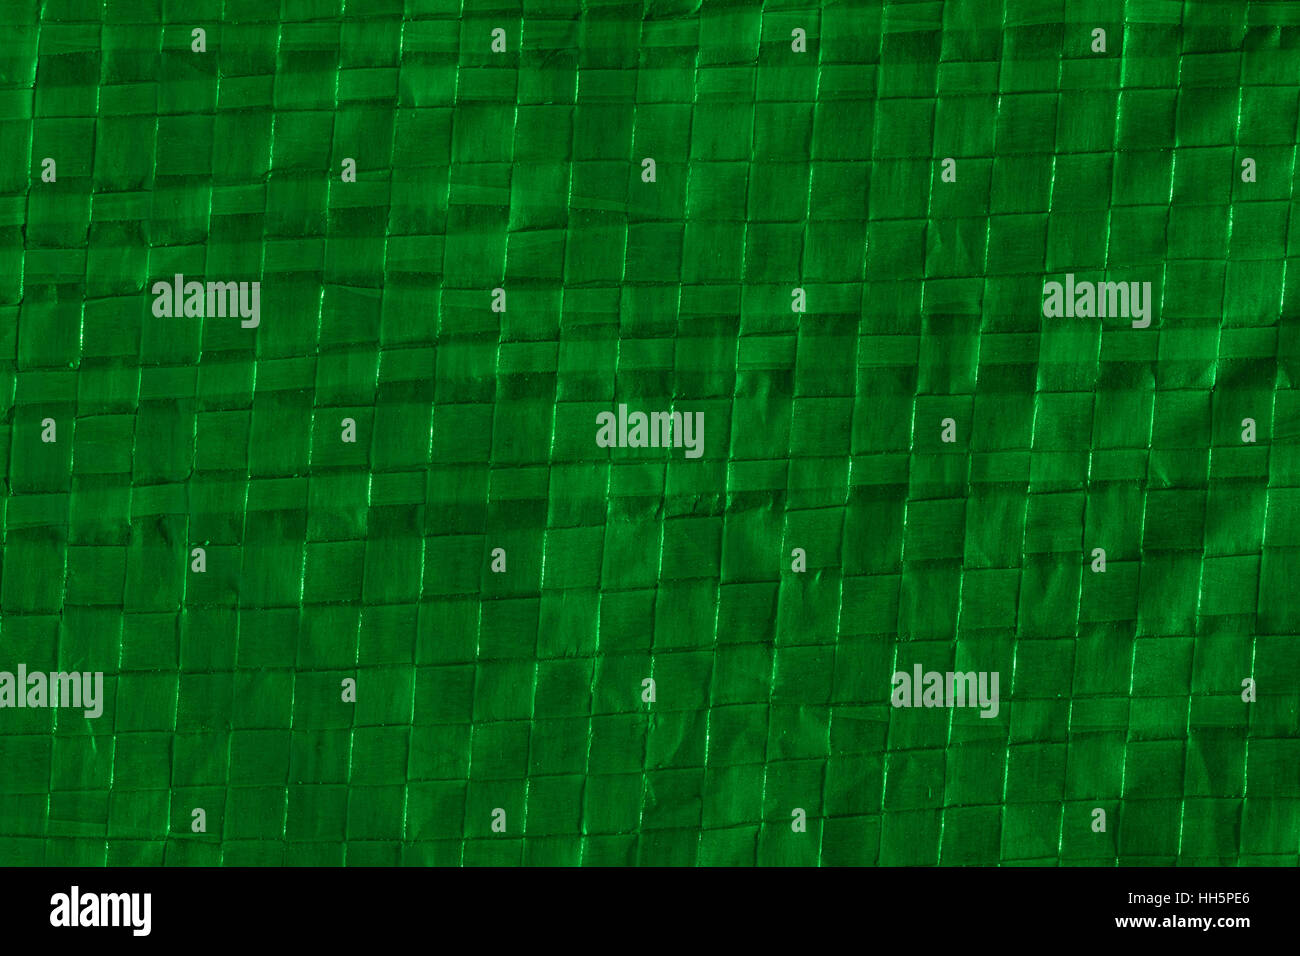 Abstraktes Makro-Foto des Abschnitts des grün beleuchteten Polymer-Bodenblech / Plane für Camping verwendet. Sieht fast aus wie Bambus. Schutzschicht Metapher. Stockfoto